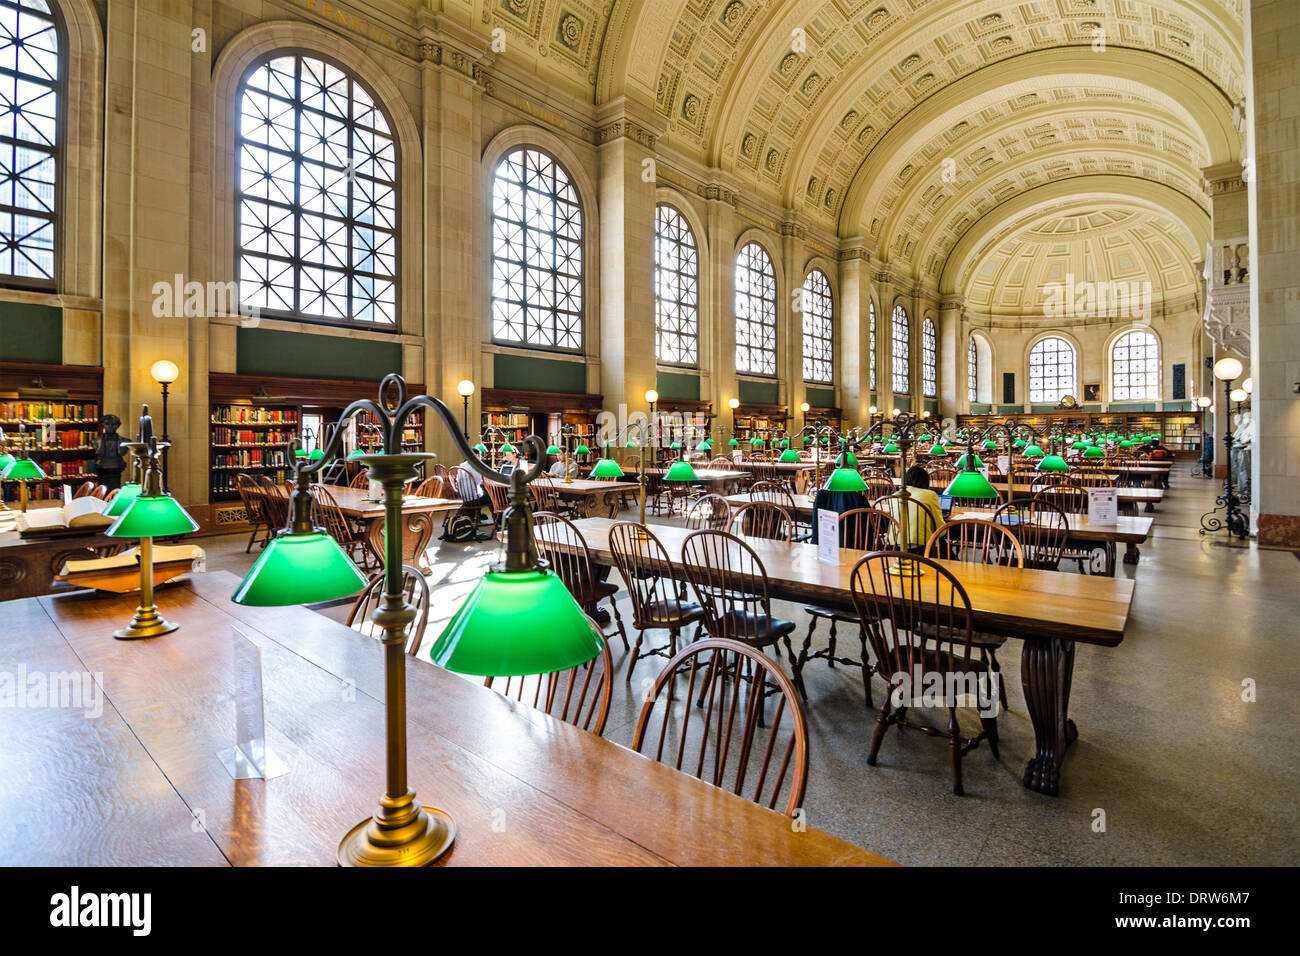 Boston Public Library in Boston, Massachusetts. Stock Photo